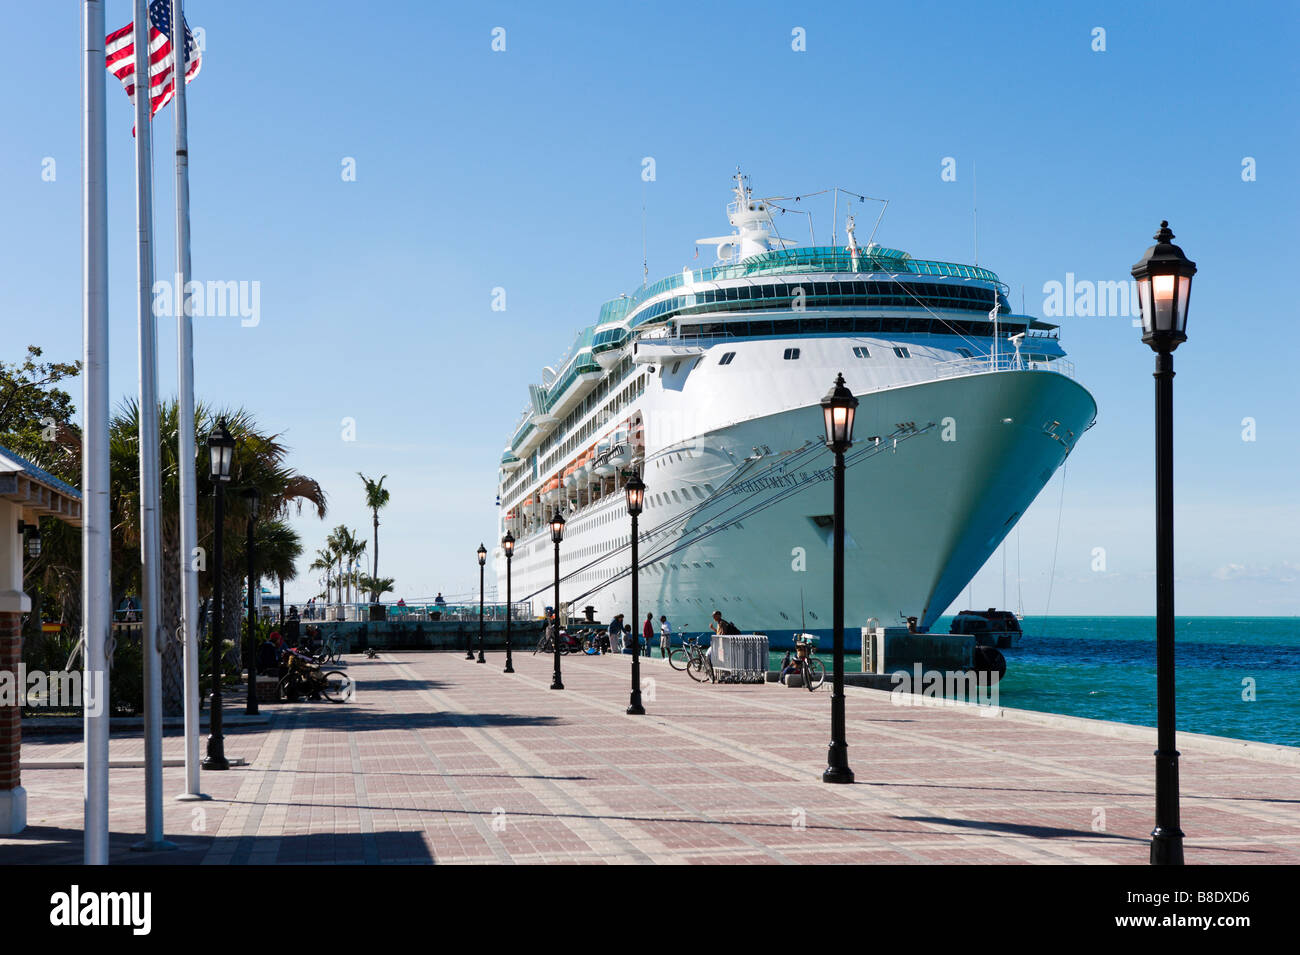 Le bateau de croisière Royal Caribbean enchantement "de la mer" accosté au terminal des croisières à Key West, Florida Keys, USA Banque D'Images